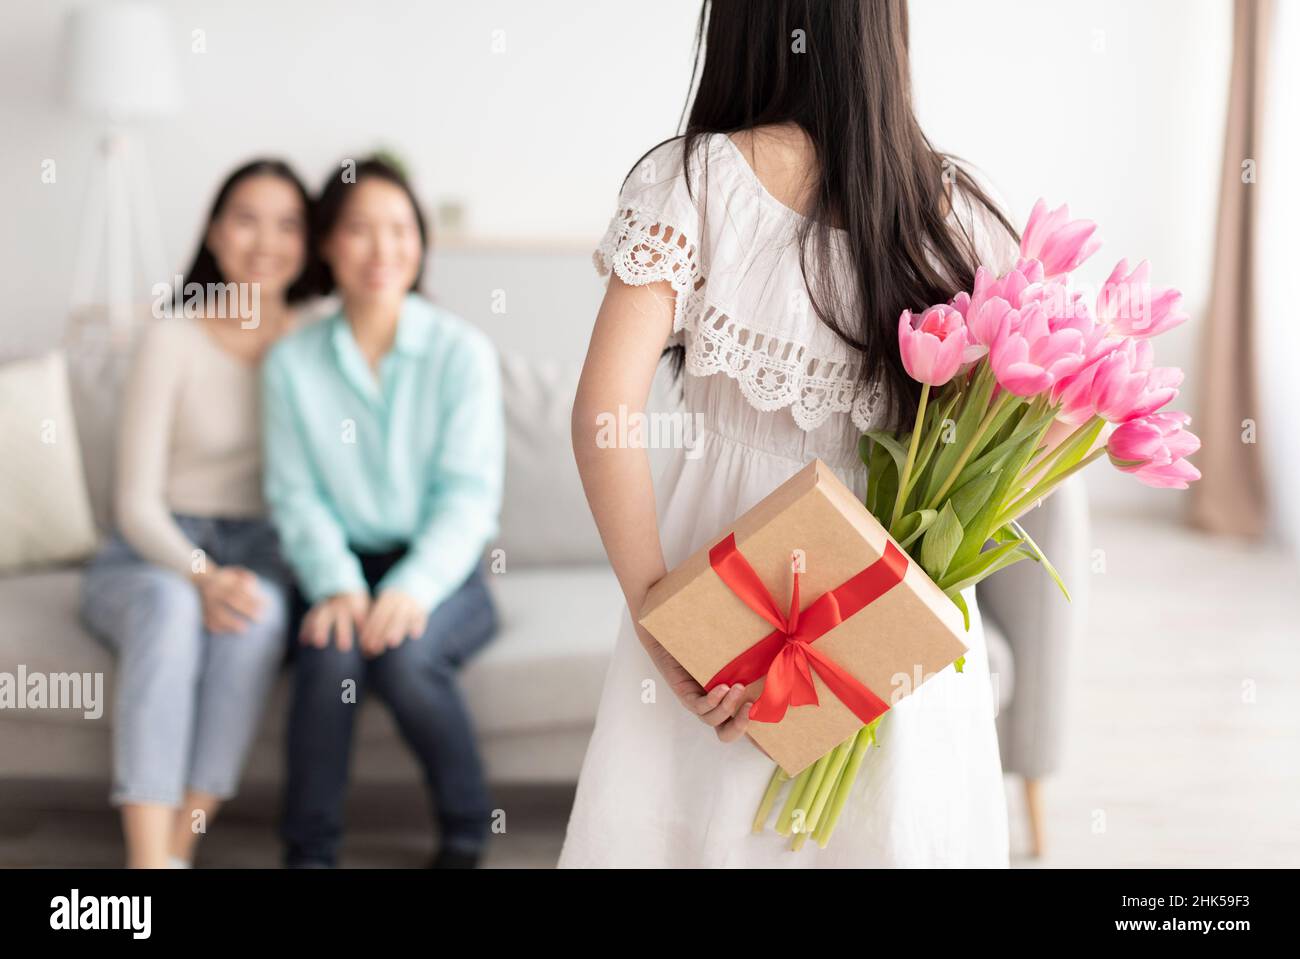 Festa della donna. Ragazza asiatica nascondendo dono e fiori dietro la schiena, congratulandosi con madre e nonna con vacanza Foto Stock